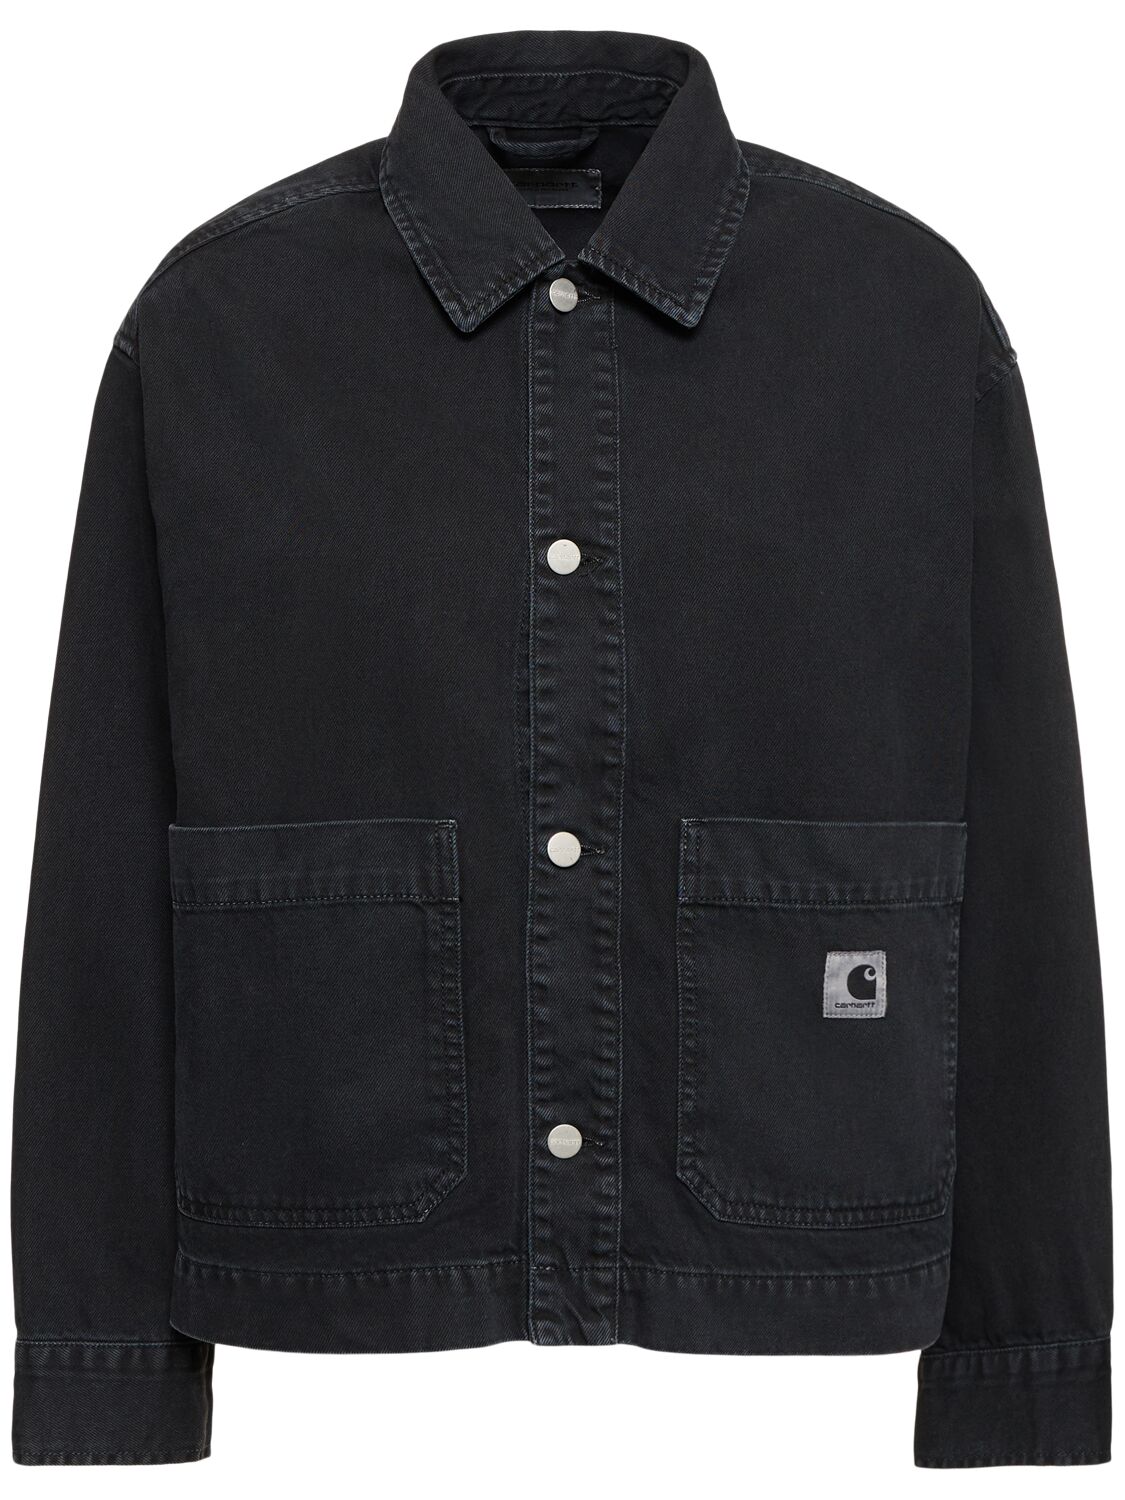 Carhartt Garrison Cotton Jacket In Black